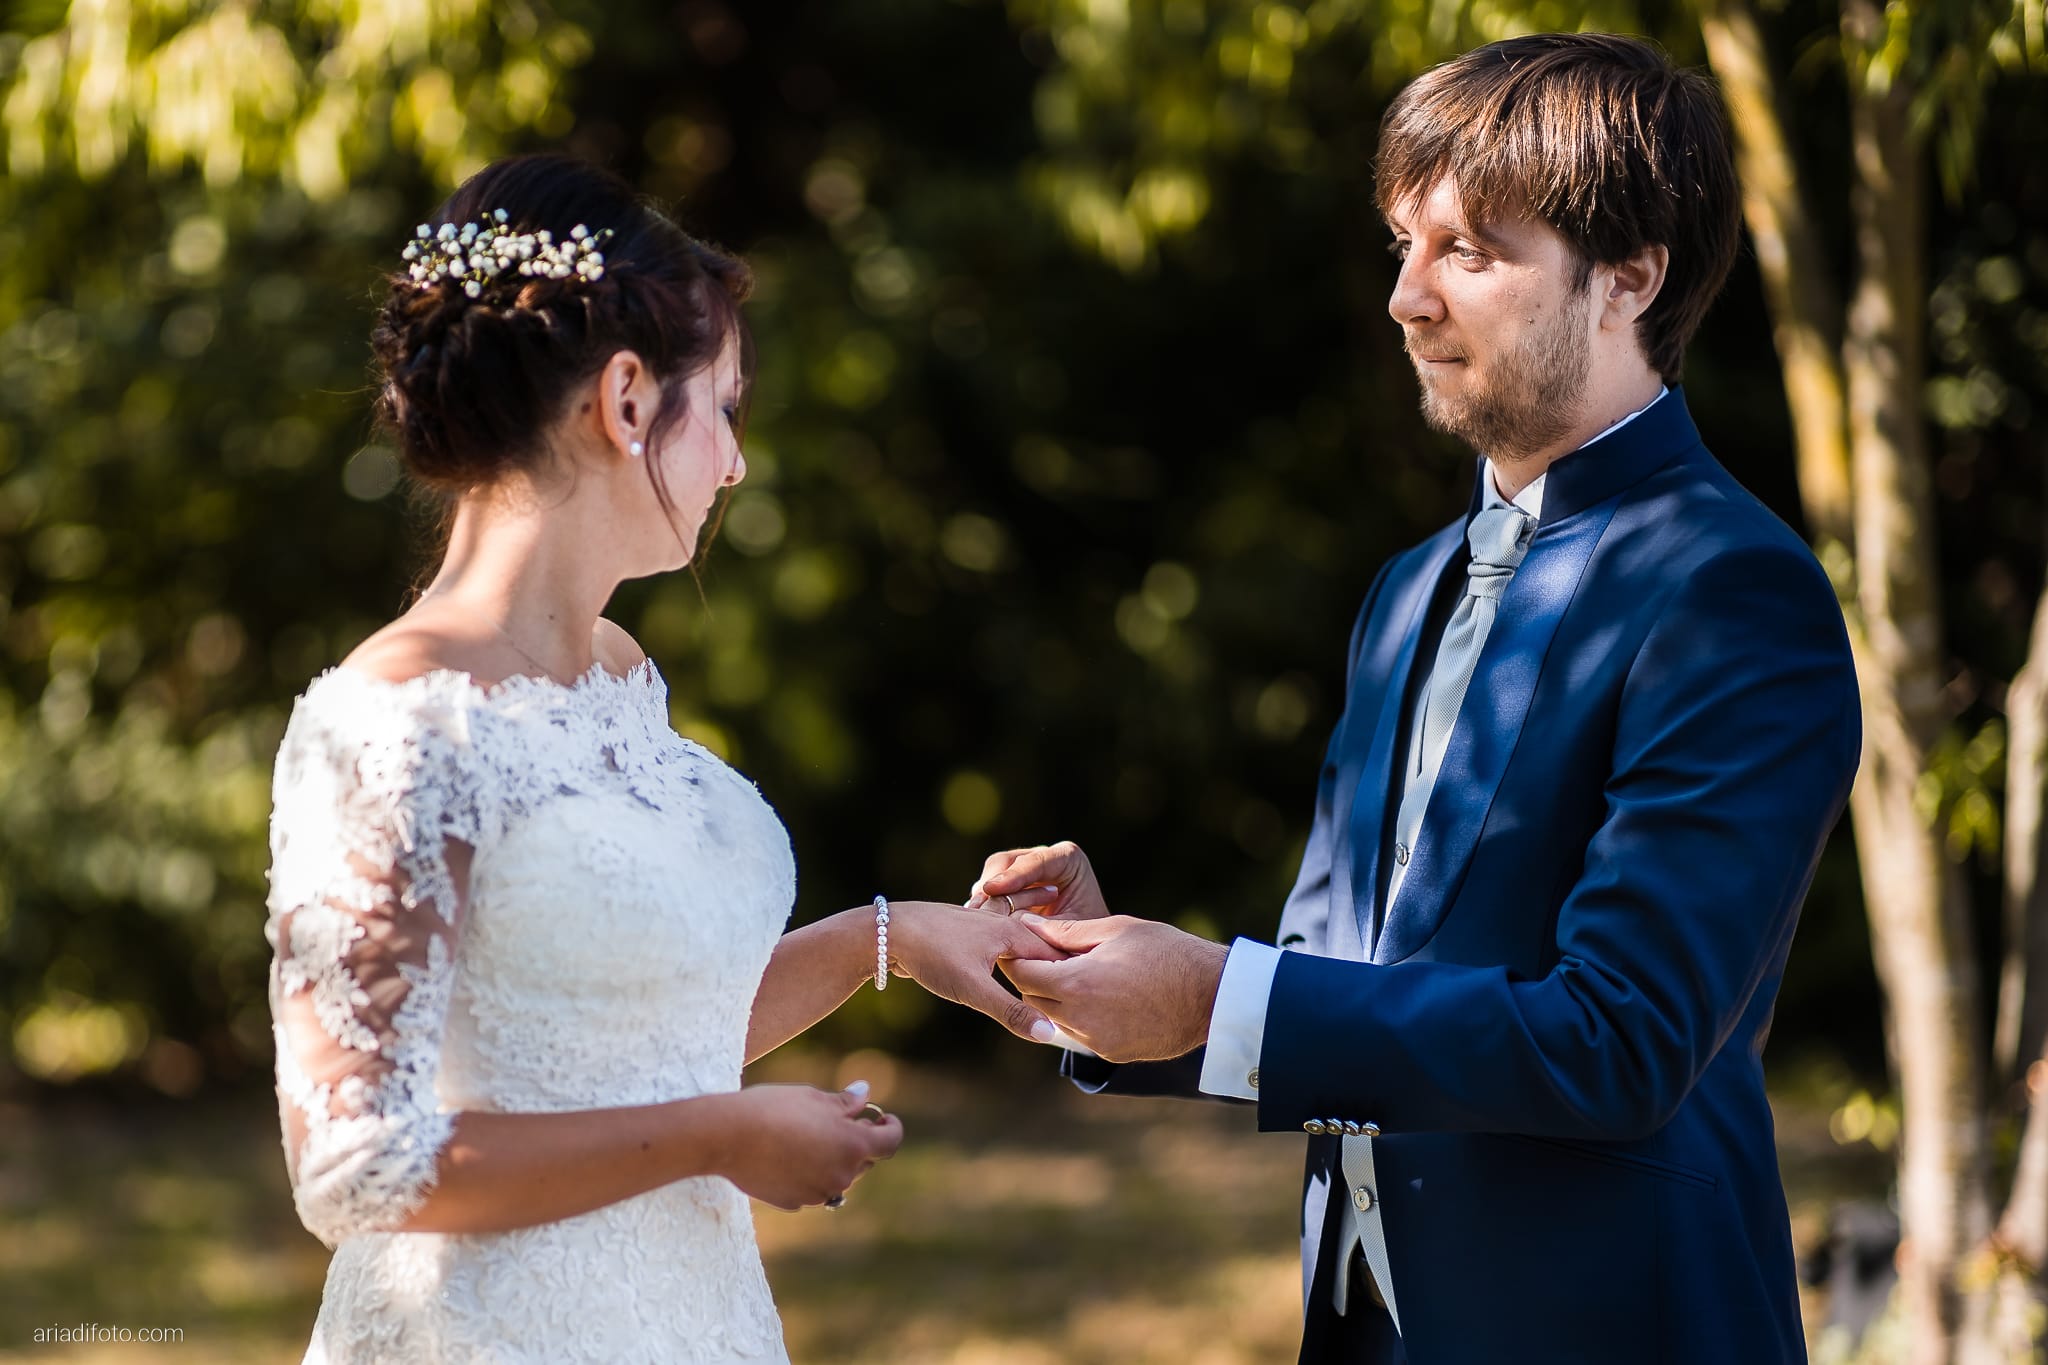 Annalisa Michele Matrimonio all'aperto Gorizia Villa Attems cerimonia simbolica all'aperto promesse scambio degli anelli